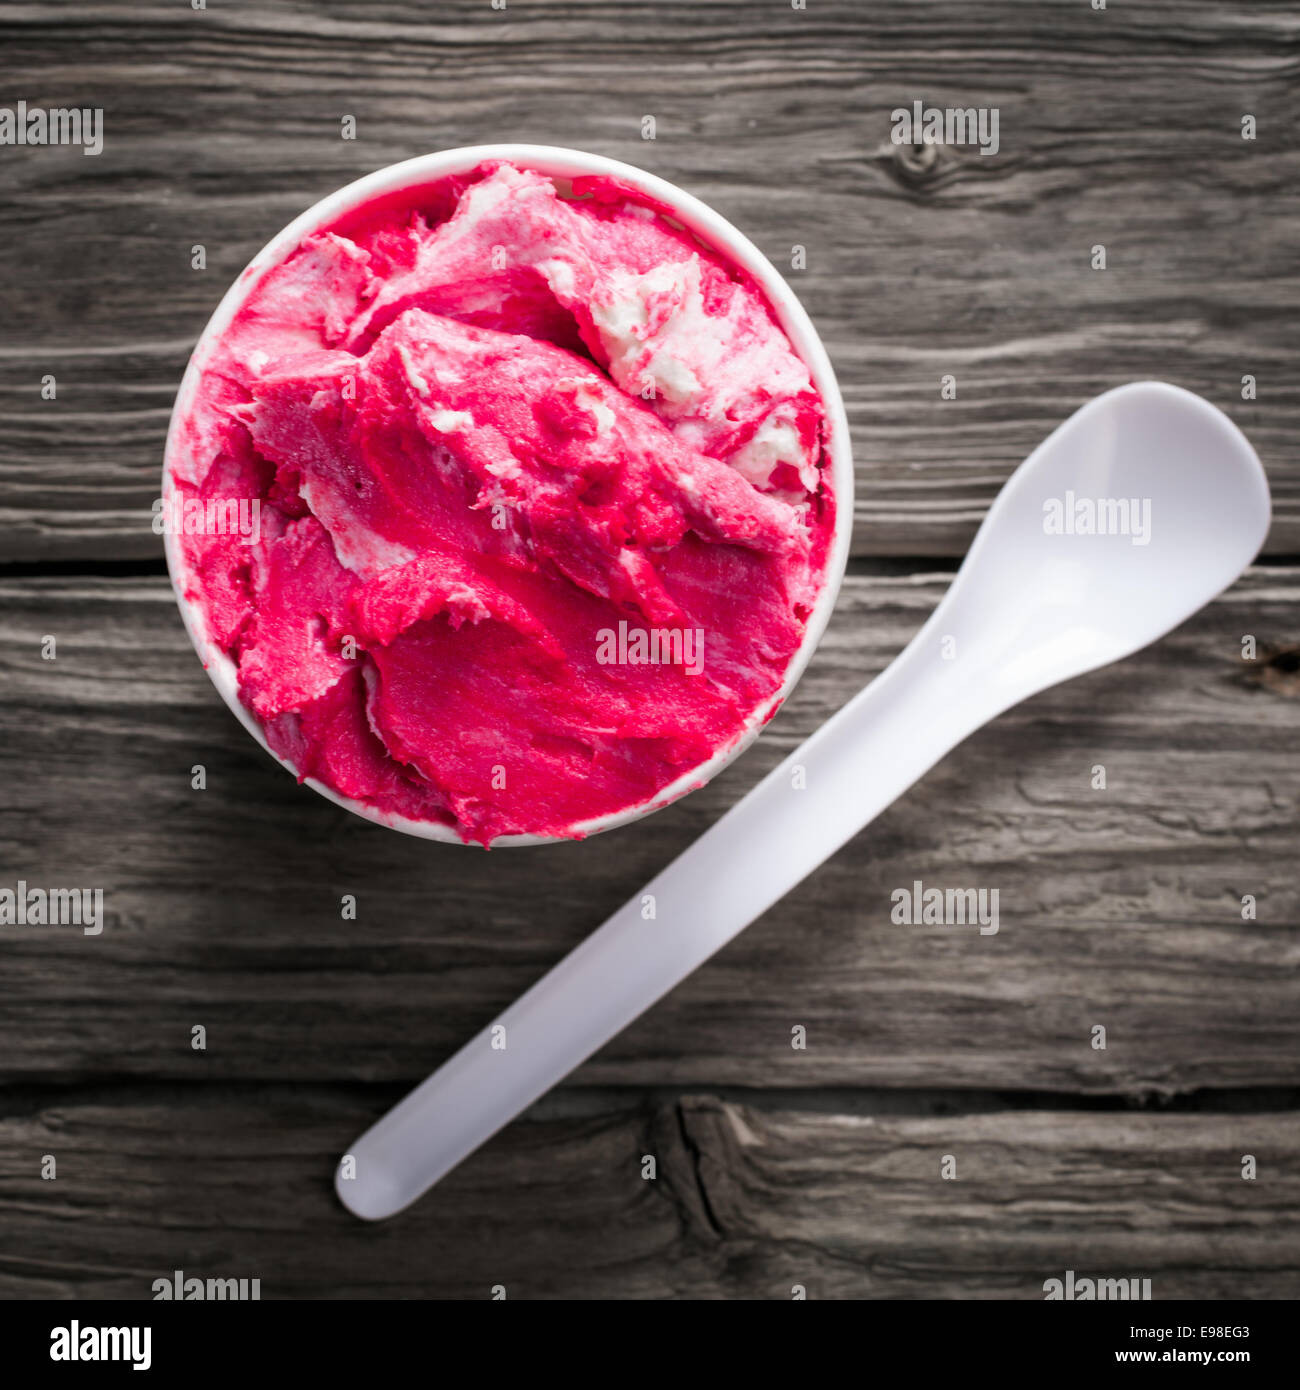 Delicioso helado de frambuesa refrescante fría en una tina de plástico para llevar con una cucharadita sobre una superficie de madera con textura antigua, sobrecarga Foto de stock